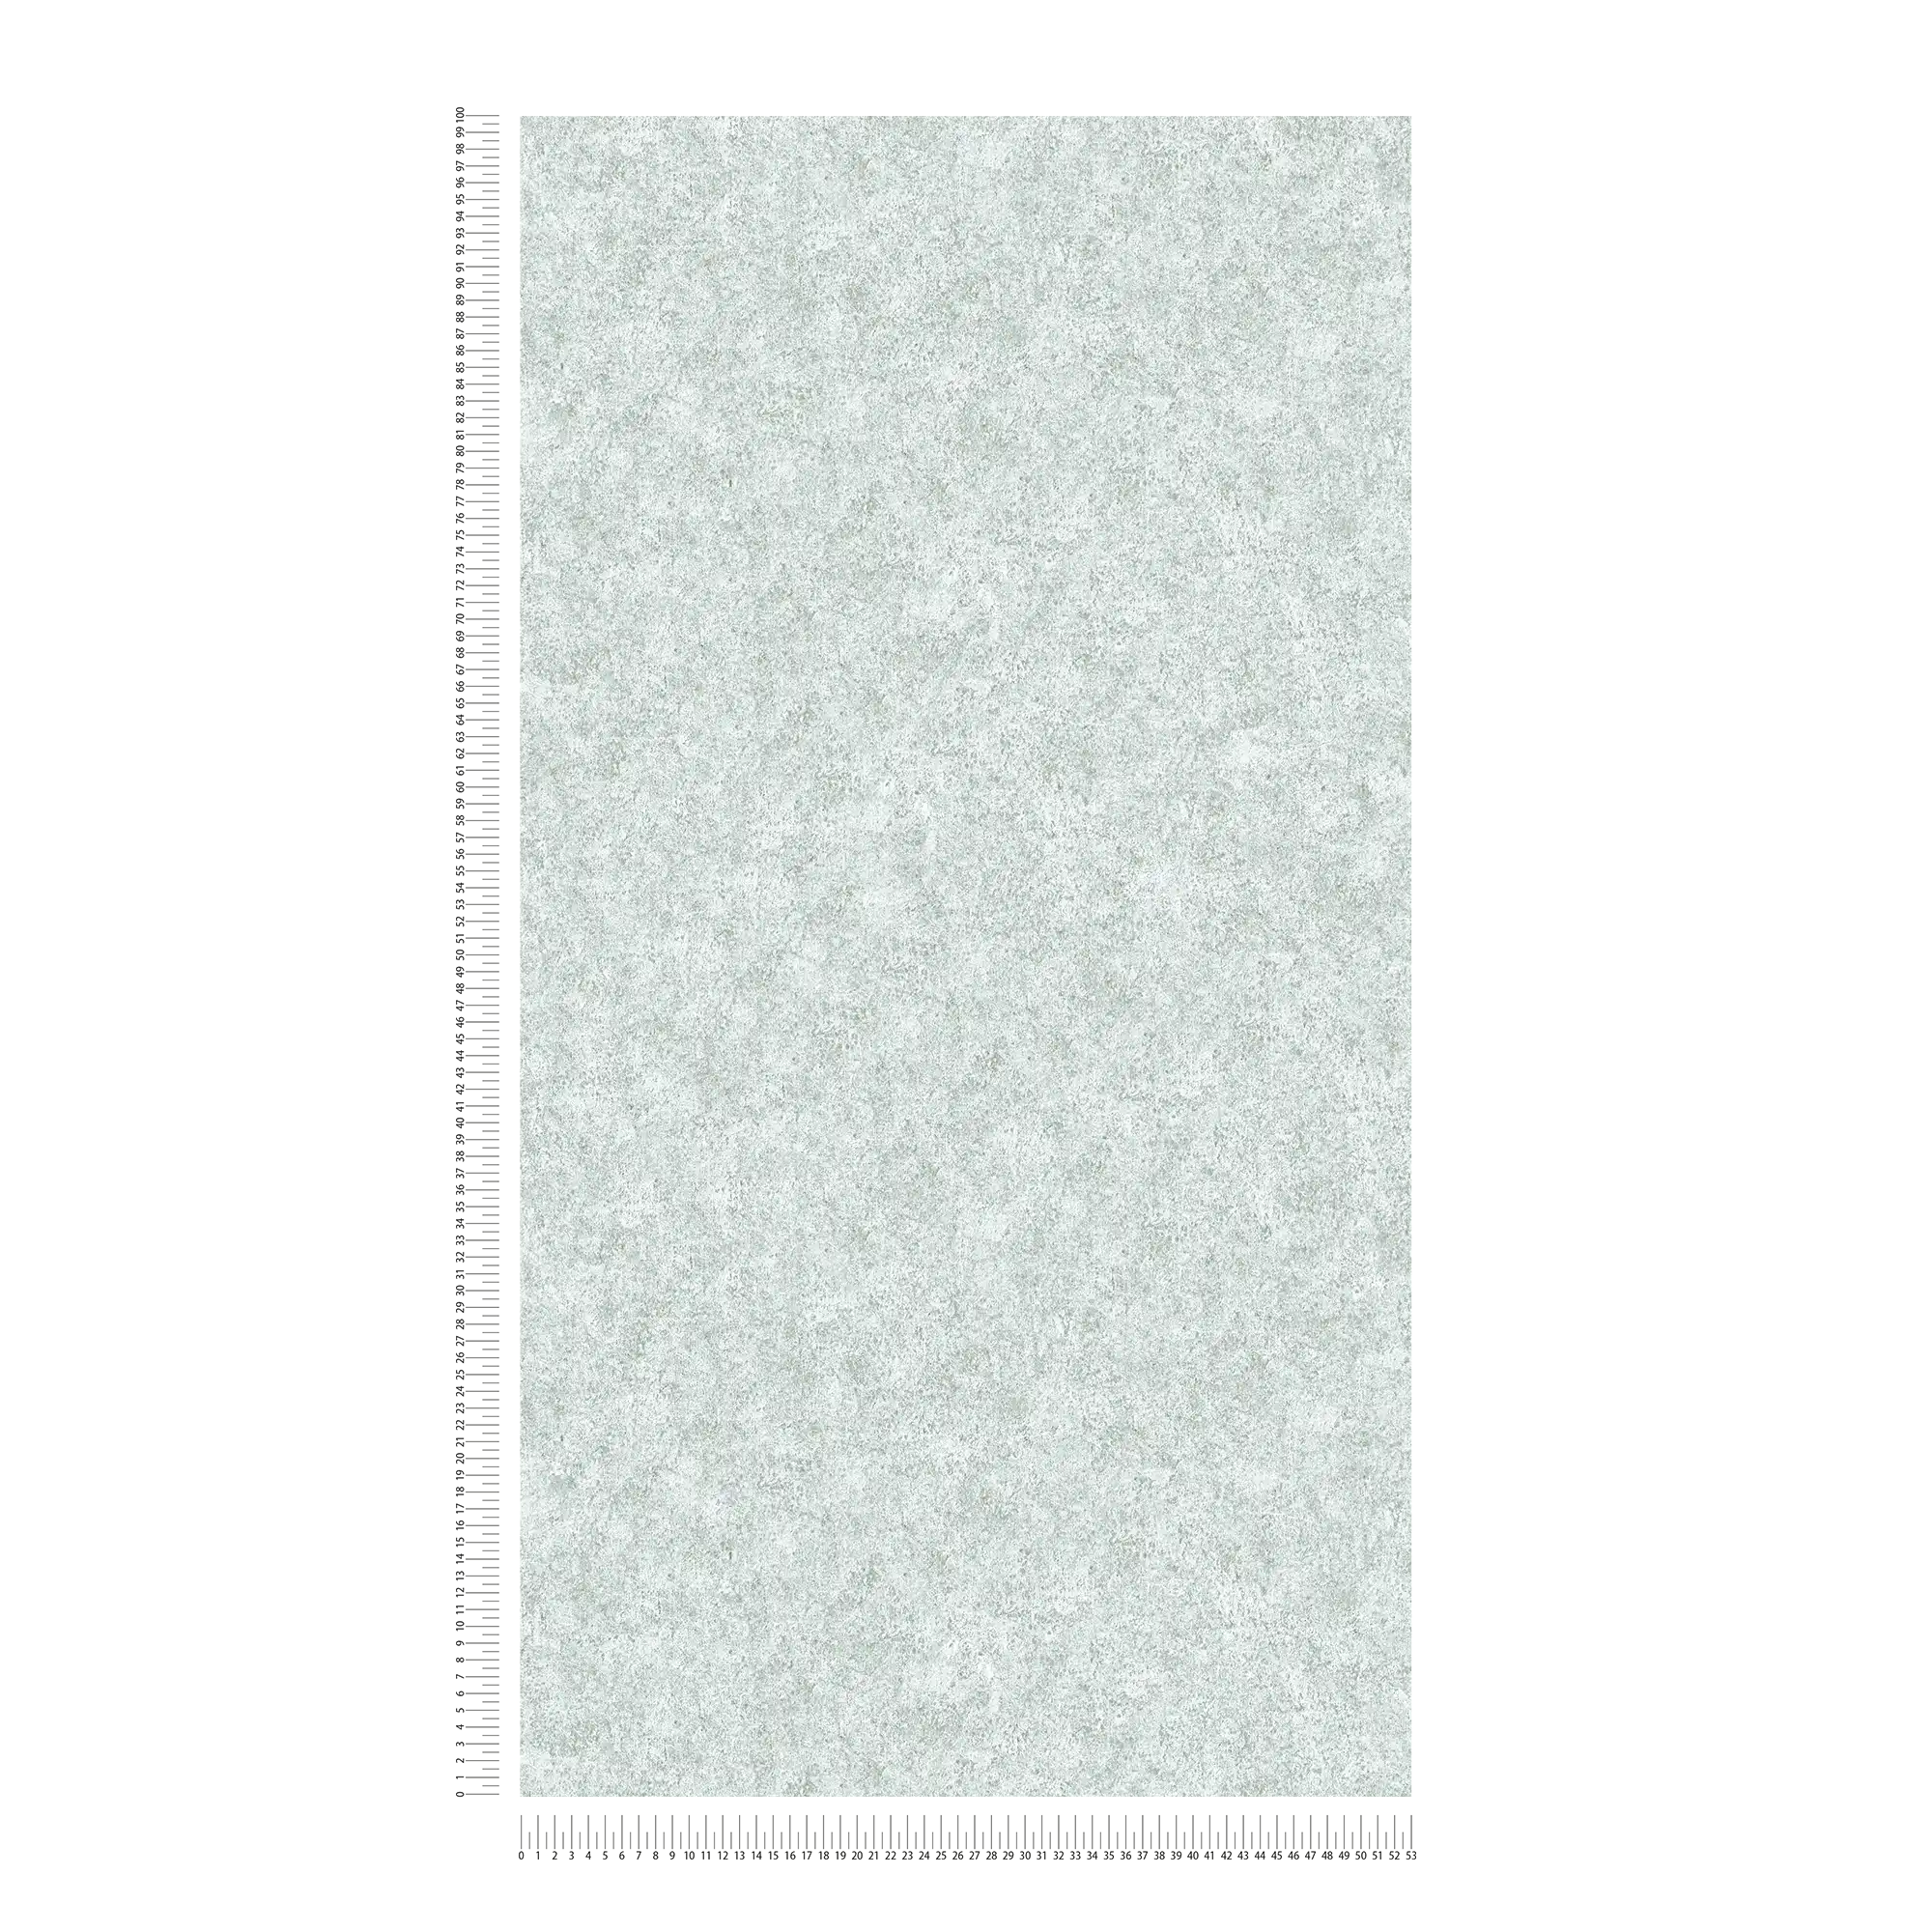             Carta da parati Melange grigio con effetto pietra marmorizzata
        